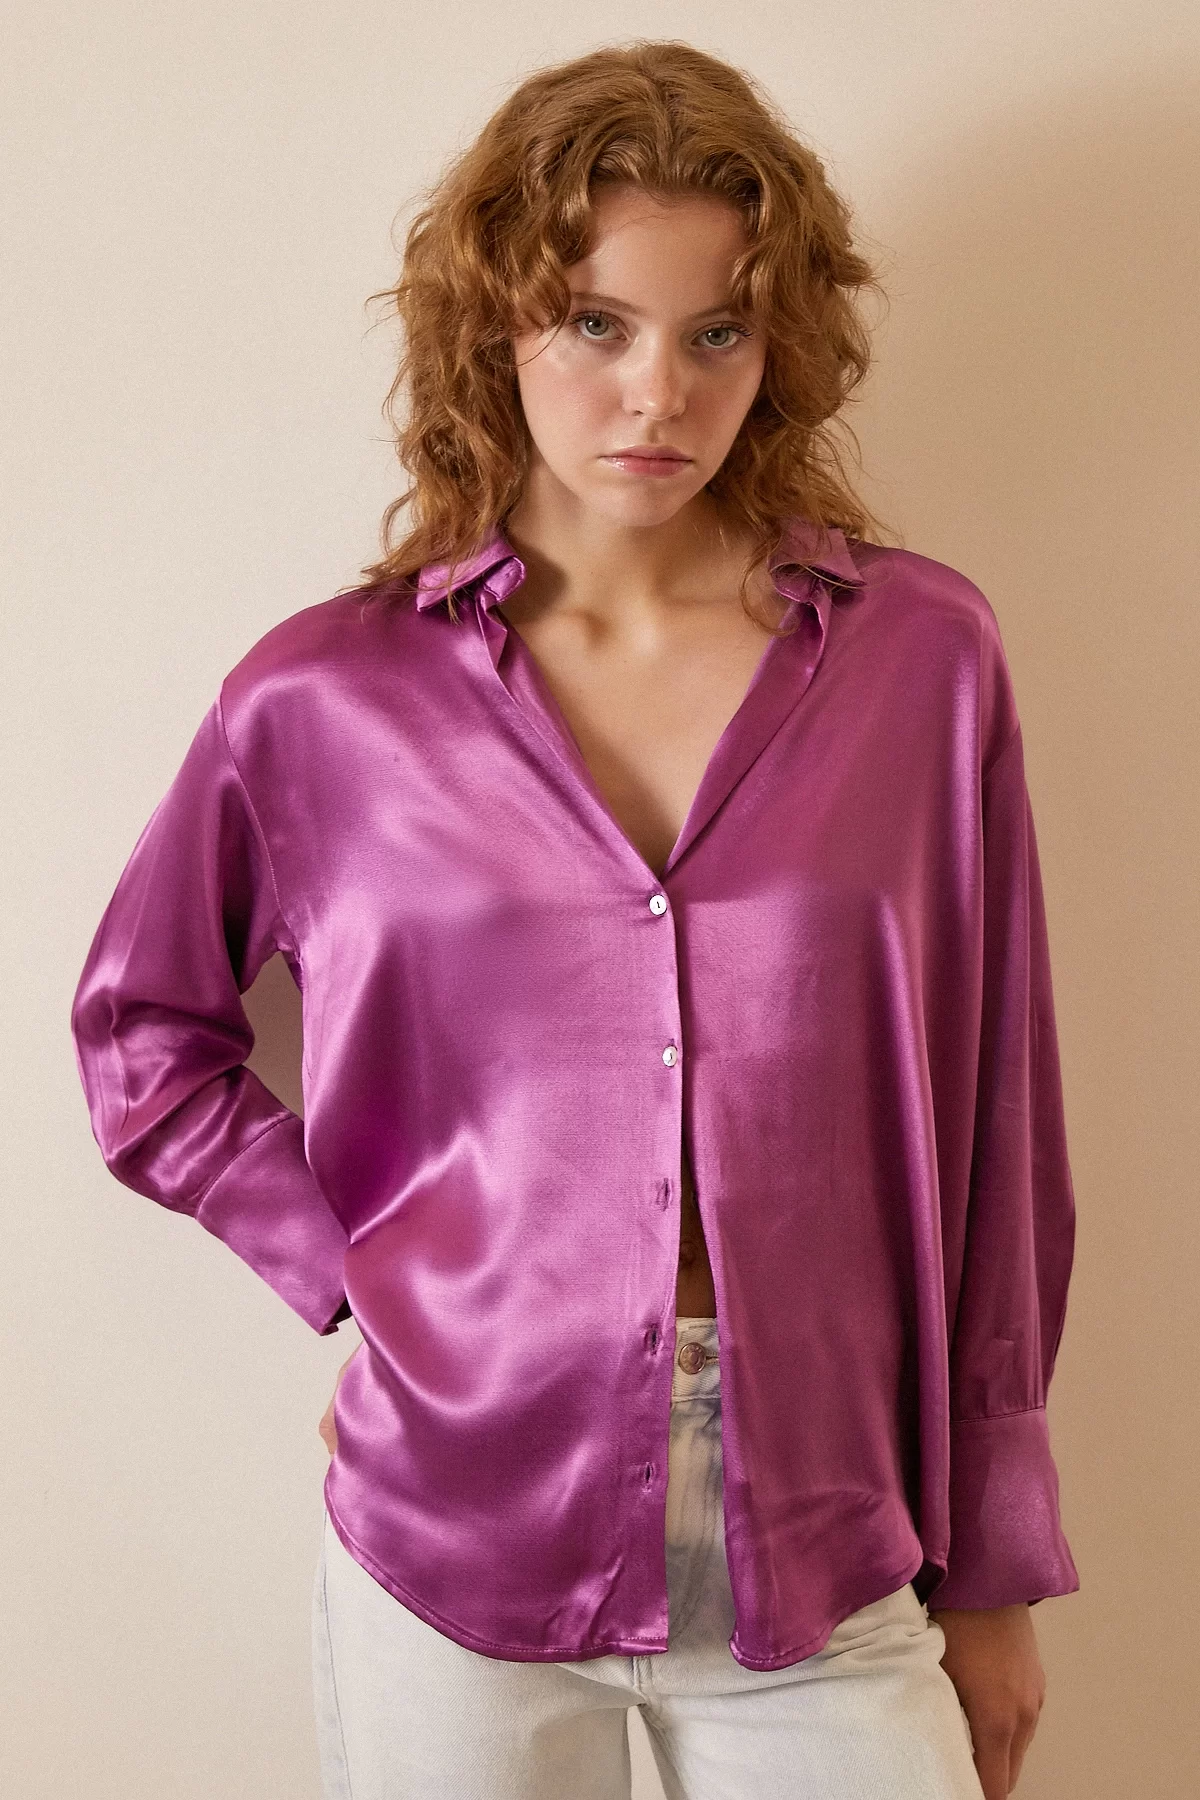 Классическая рубашка оверсайз - Фиолетовый